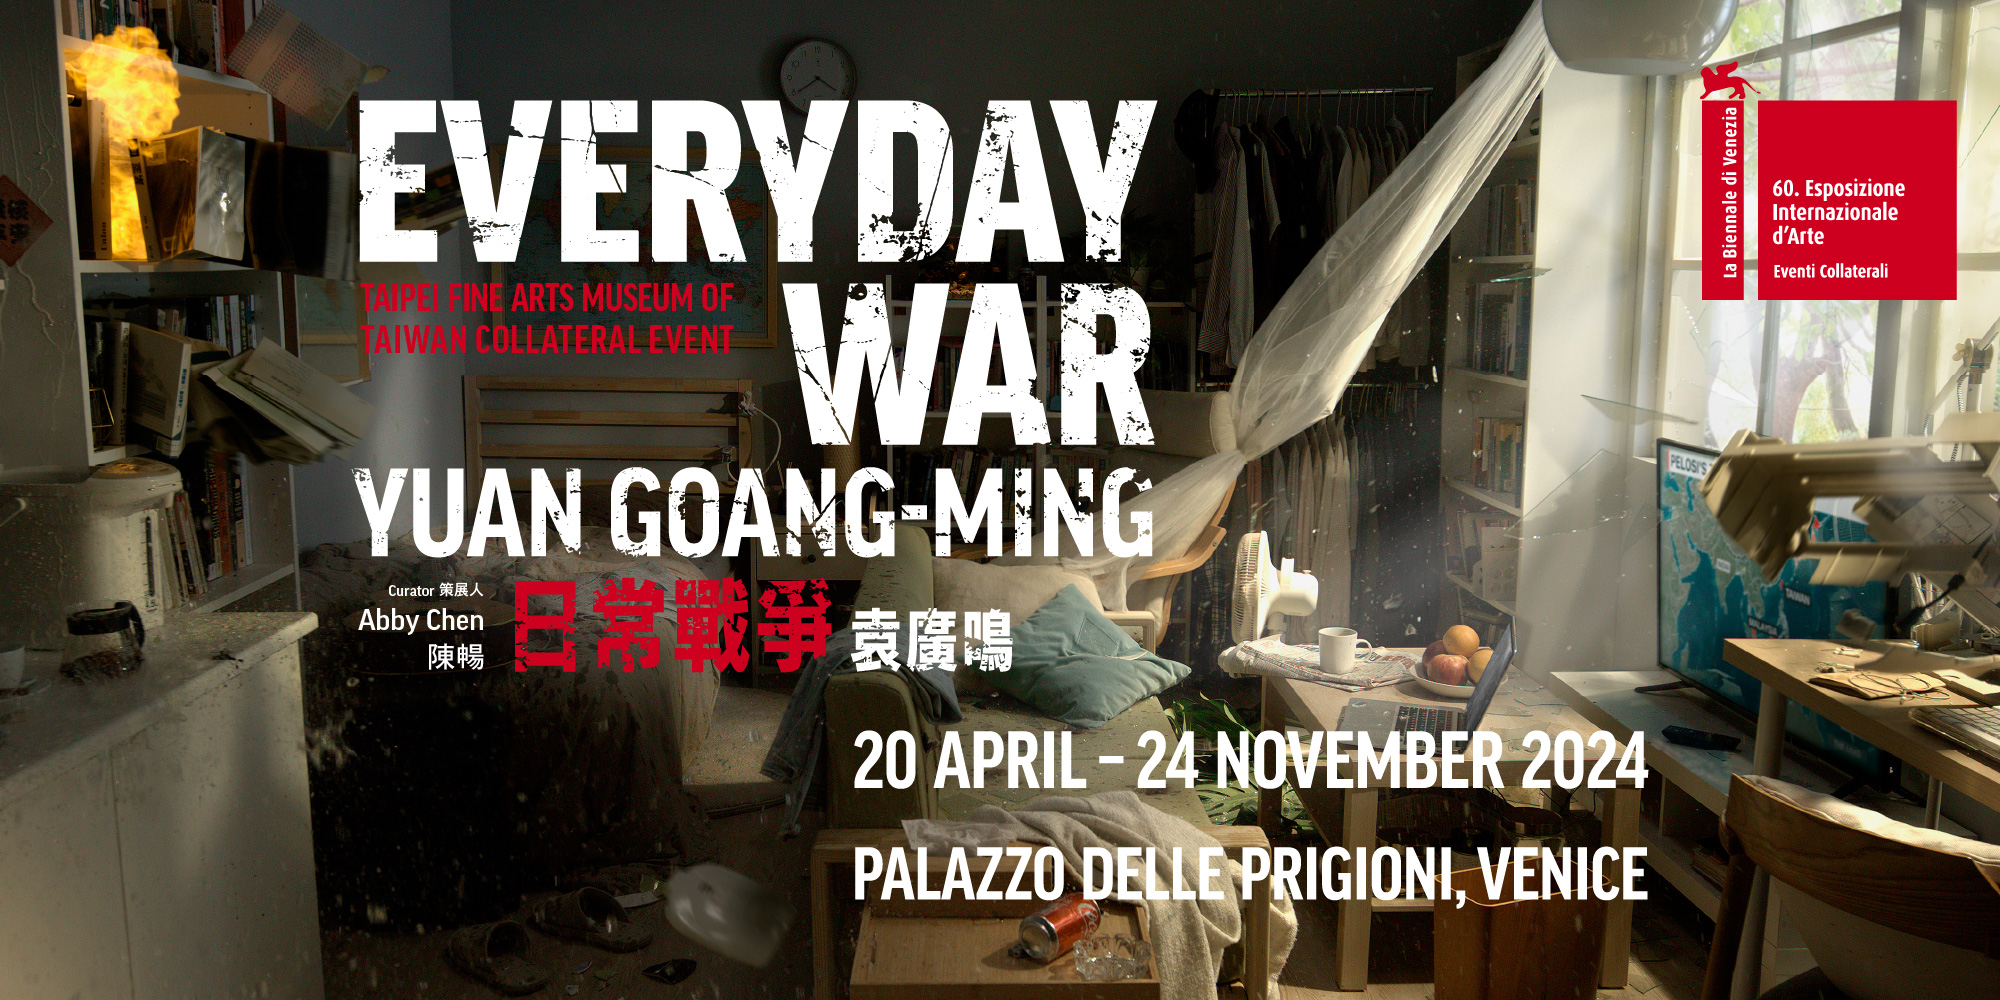 第 60 屆威尼斯雙年展台灣館「袁廣鳴:日常戰 爭」。圖/台北市立美術館提供。